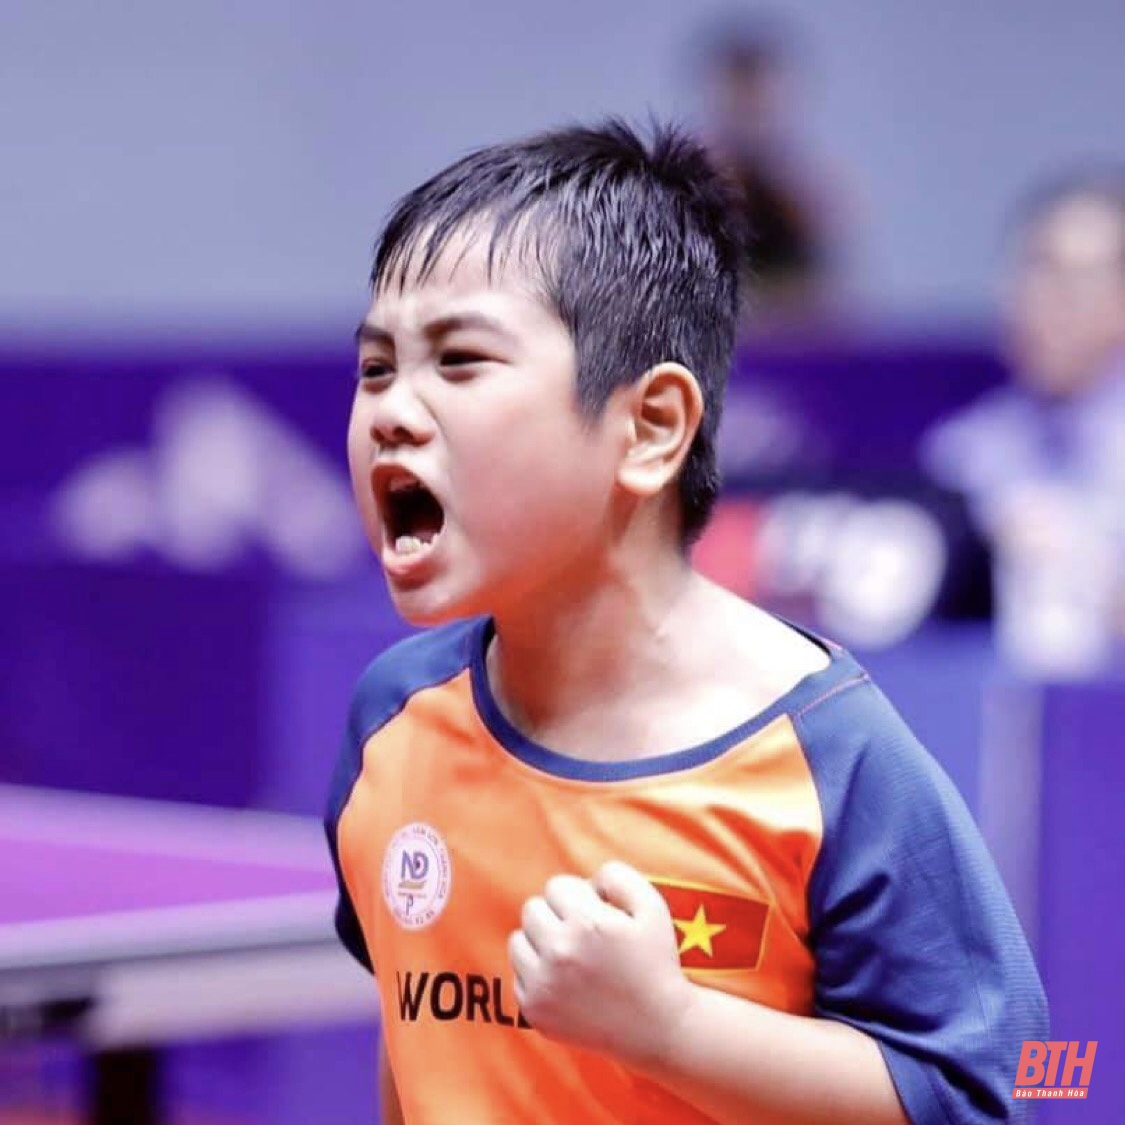 Giải bóng bàn các tay vợt xuất sắc trẻ, thiếu niên, nhi đồng toàn quốc: Thanh Hoá giành HCV ở lứa tuổi U11